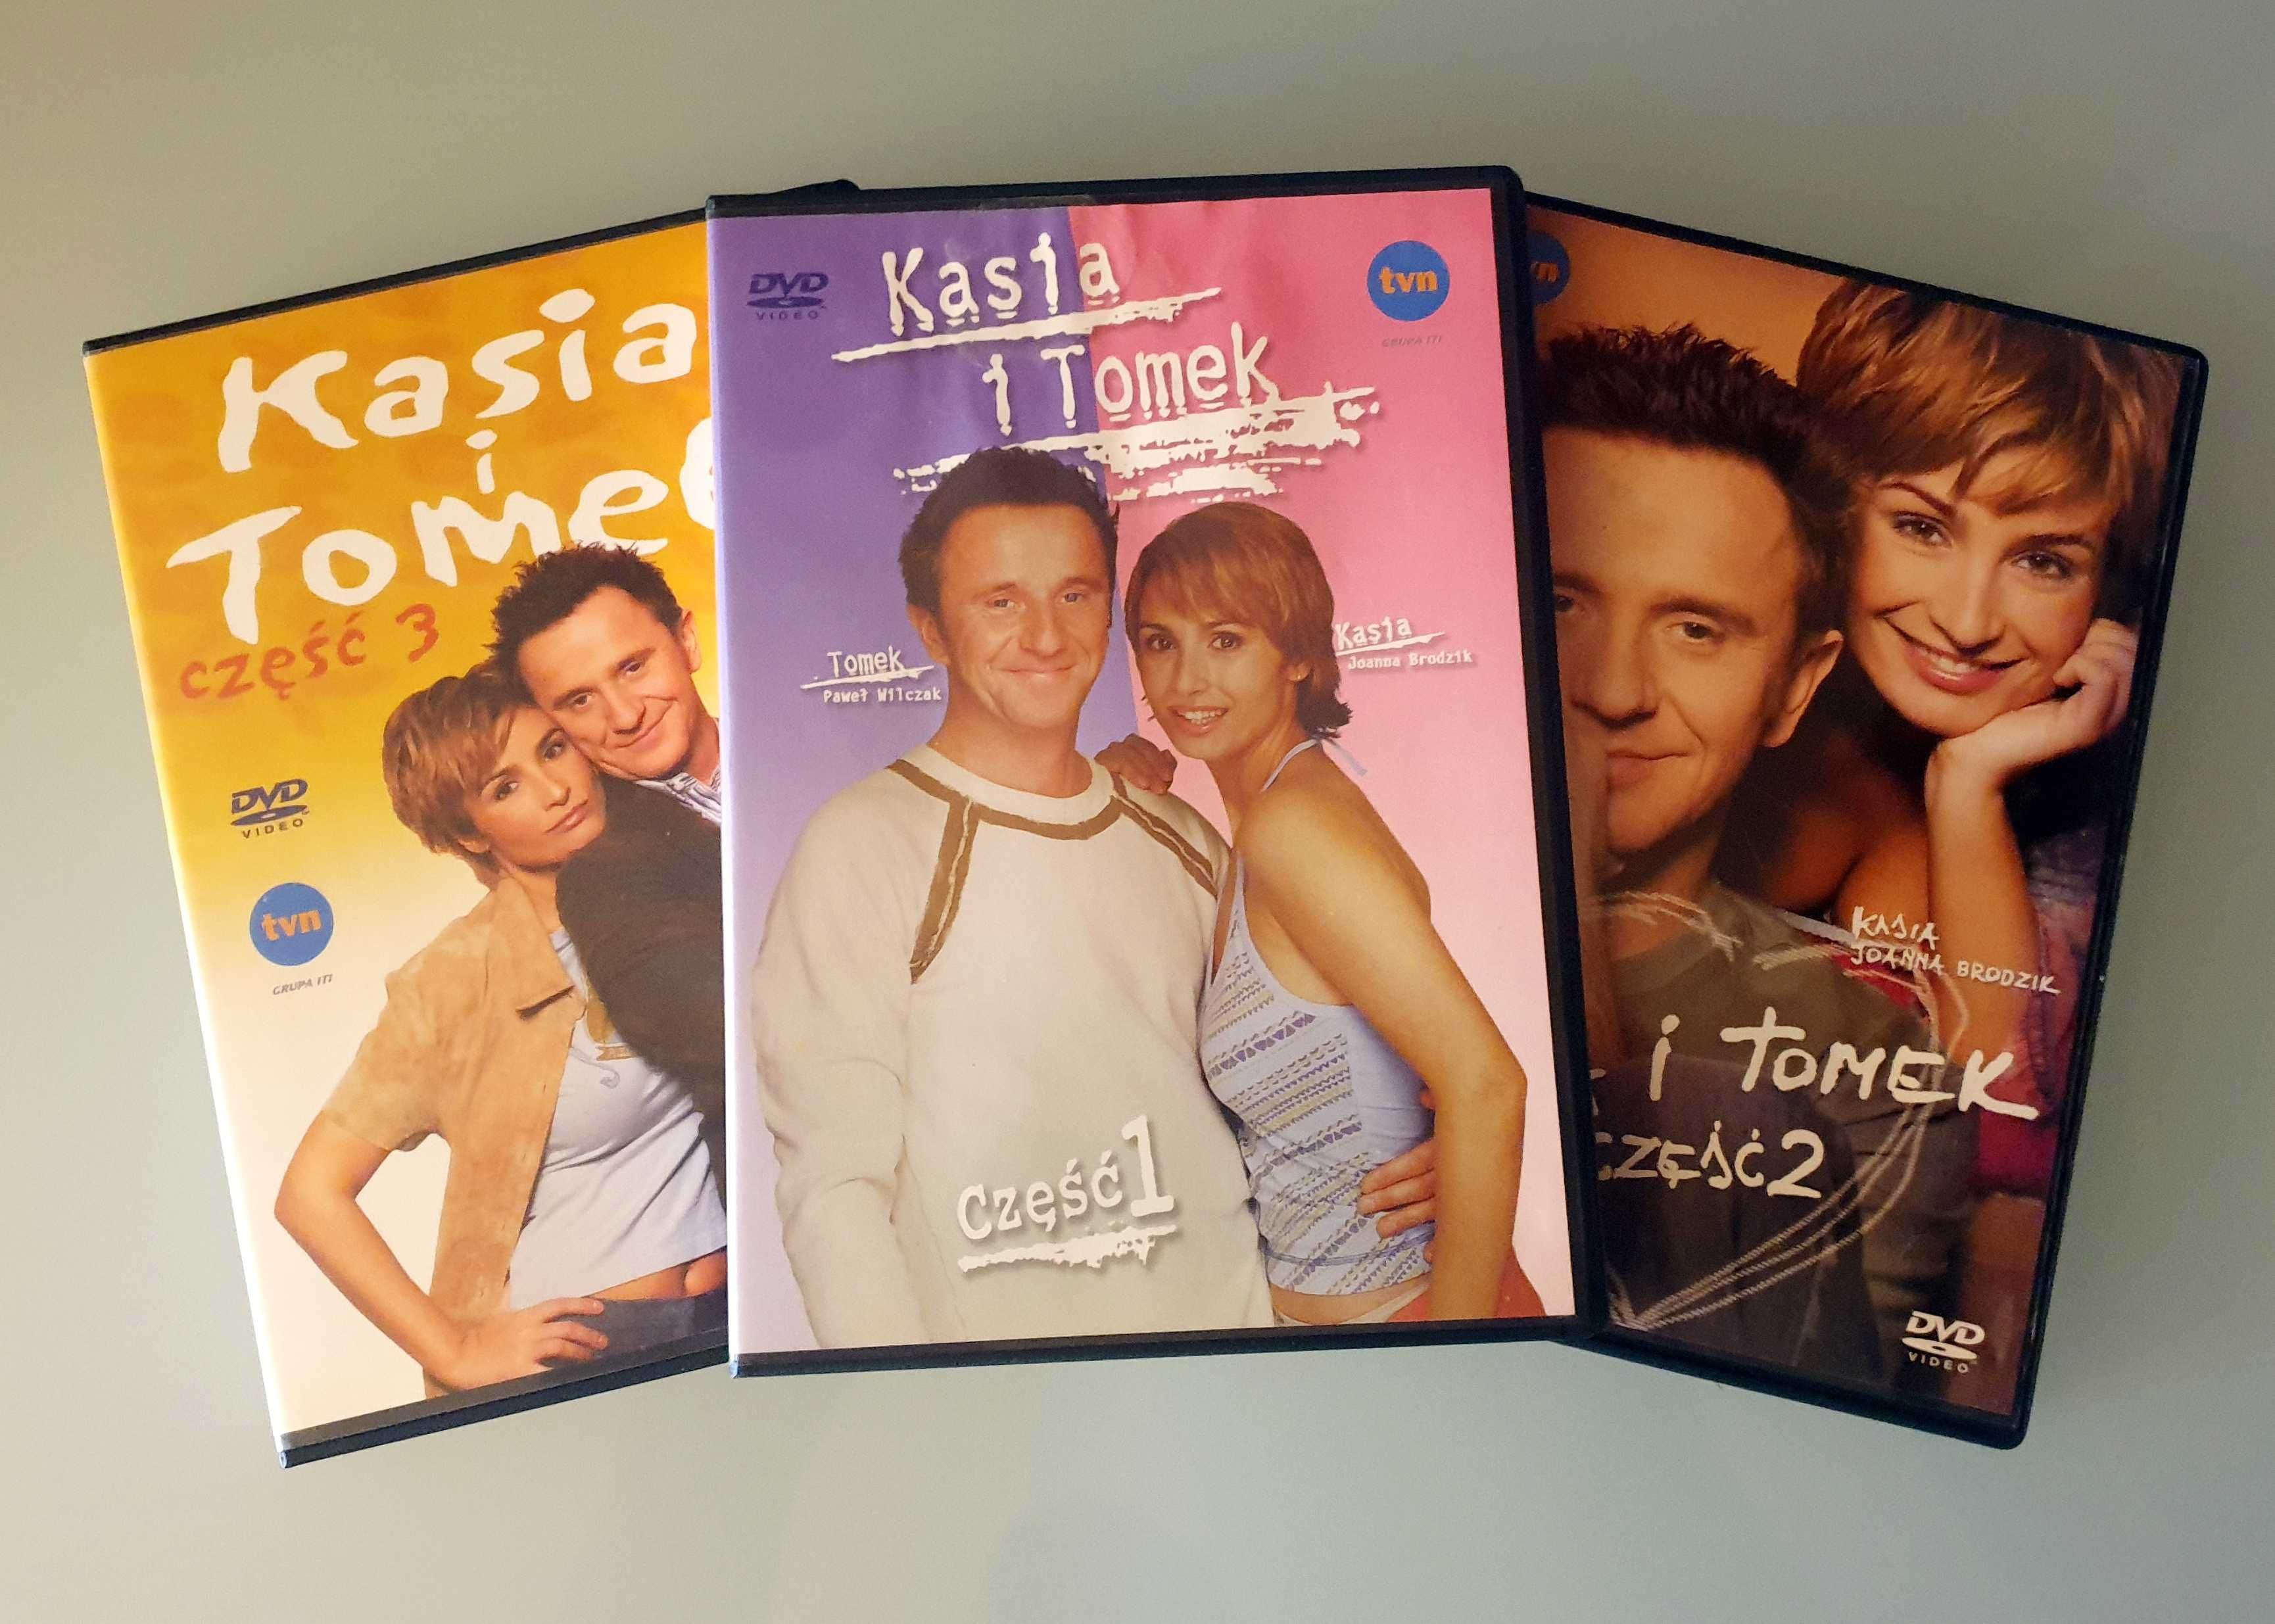 Płyty DVD / serial "Kasia i Tomek" części 1-3 (Brodzik, Wilczak)